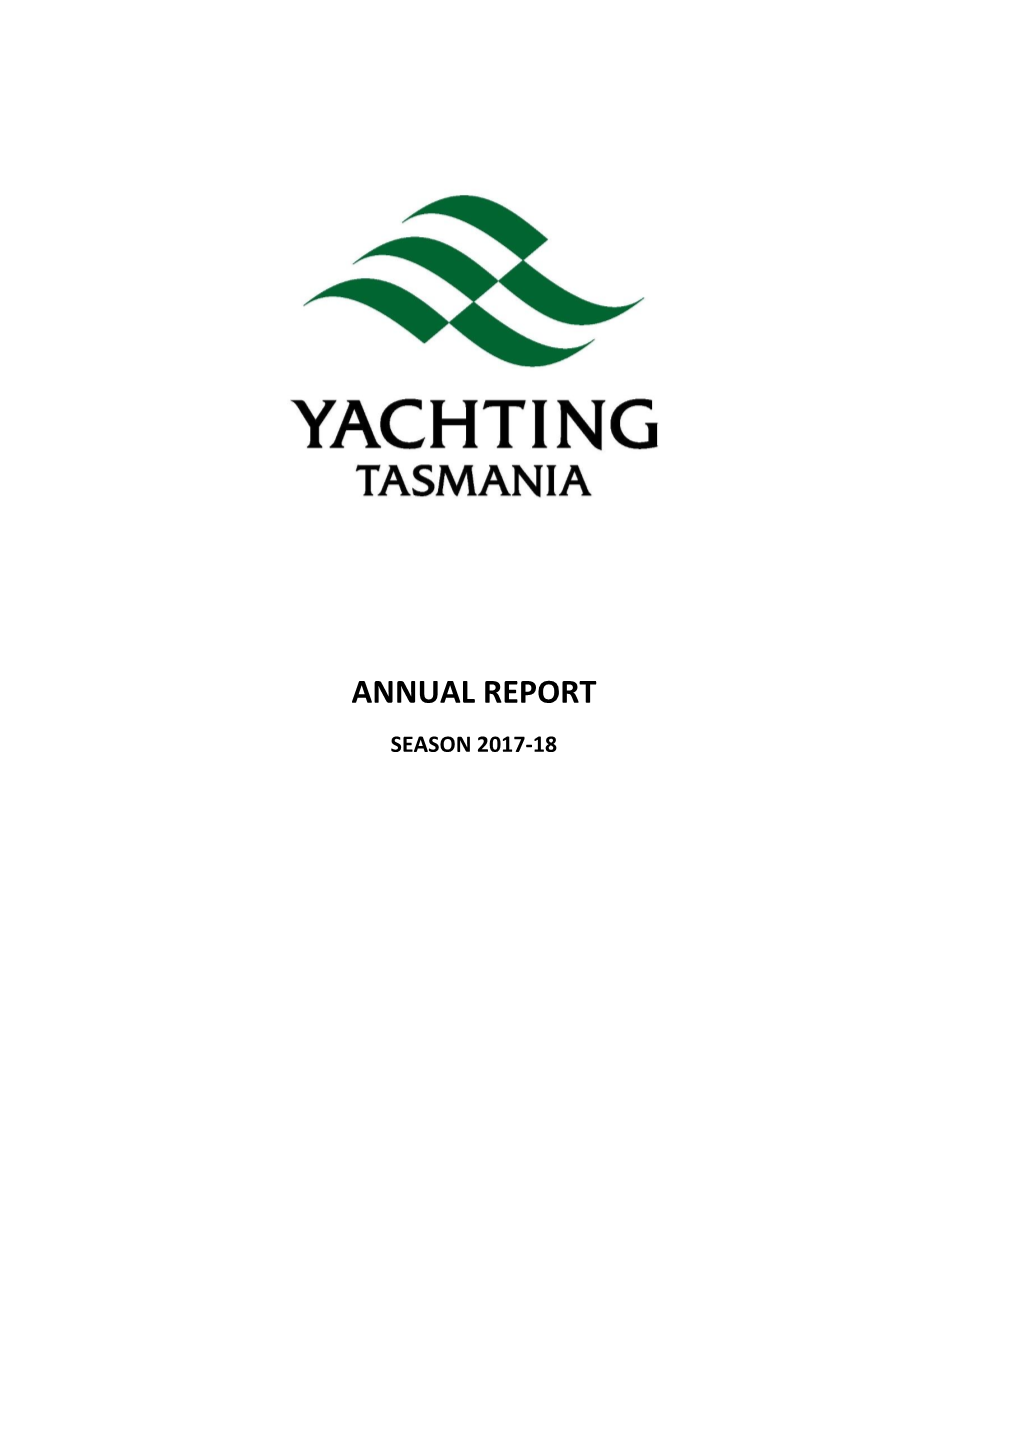 Annual Report Season 2017-18